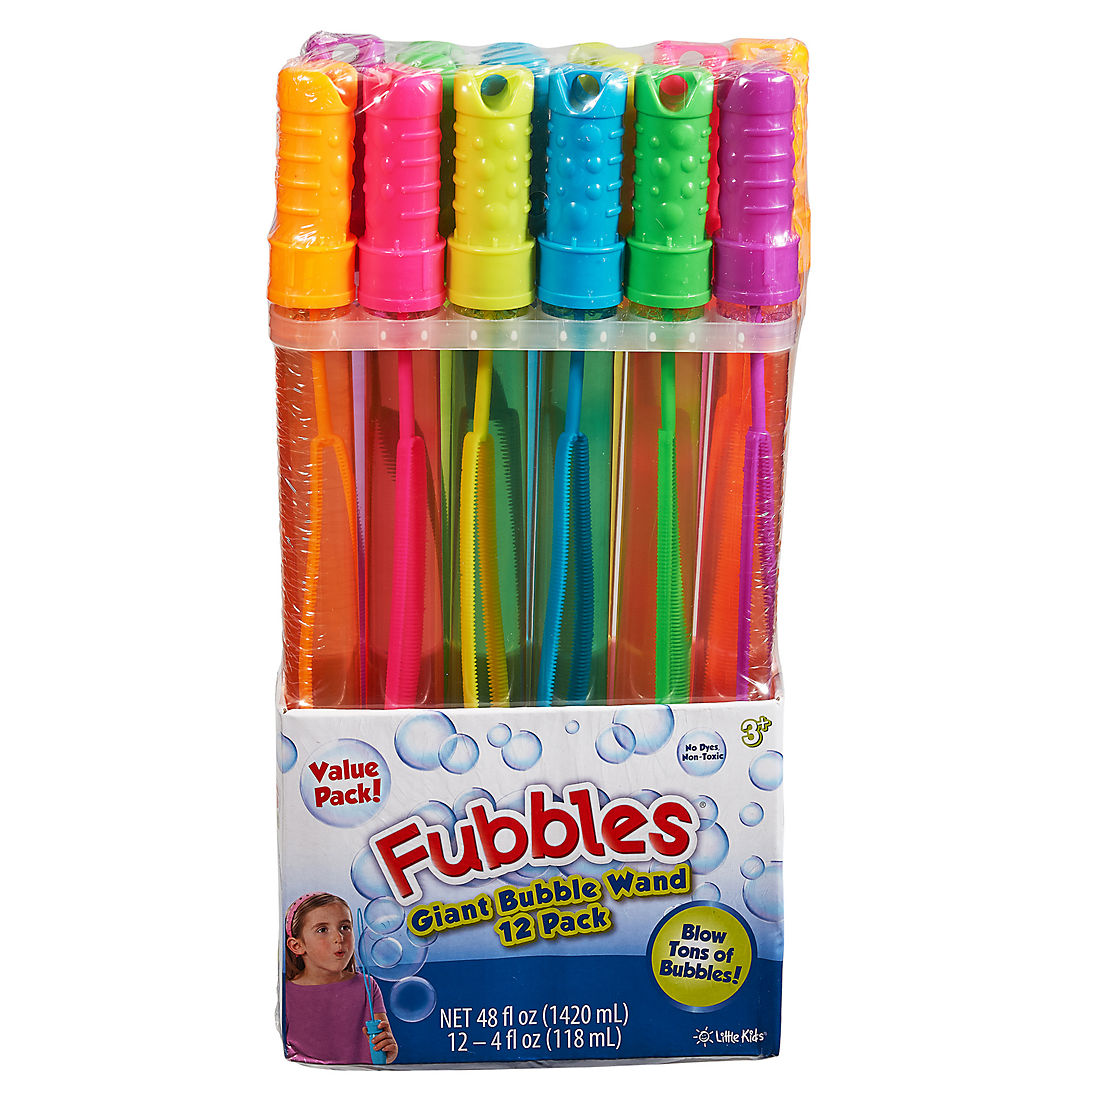 2 Piece Bundle Bubbles Bundle with Bubbles Sticks 6 Pack and Giant Bubble Bat to Make Loads of Colorful Bubbles